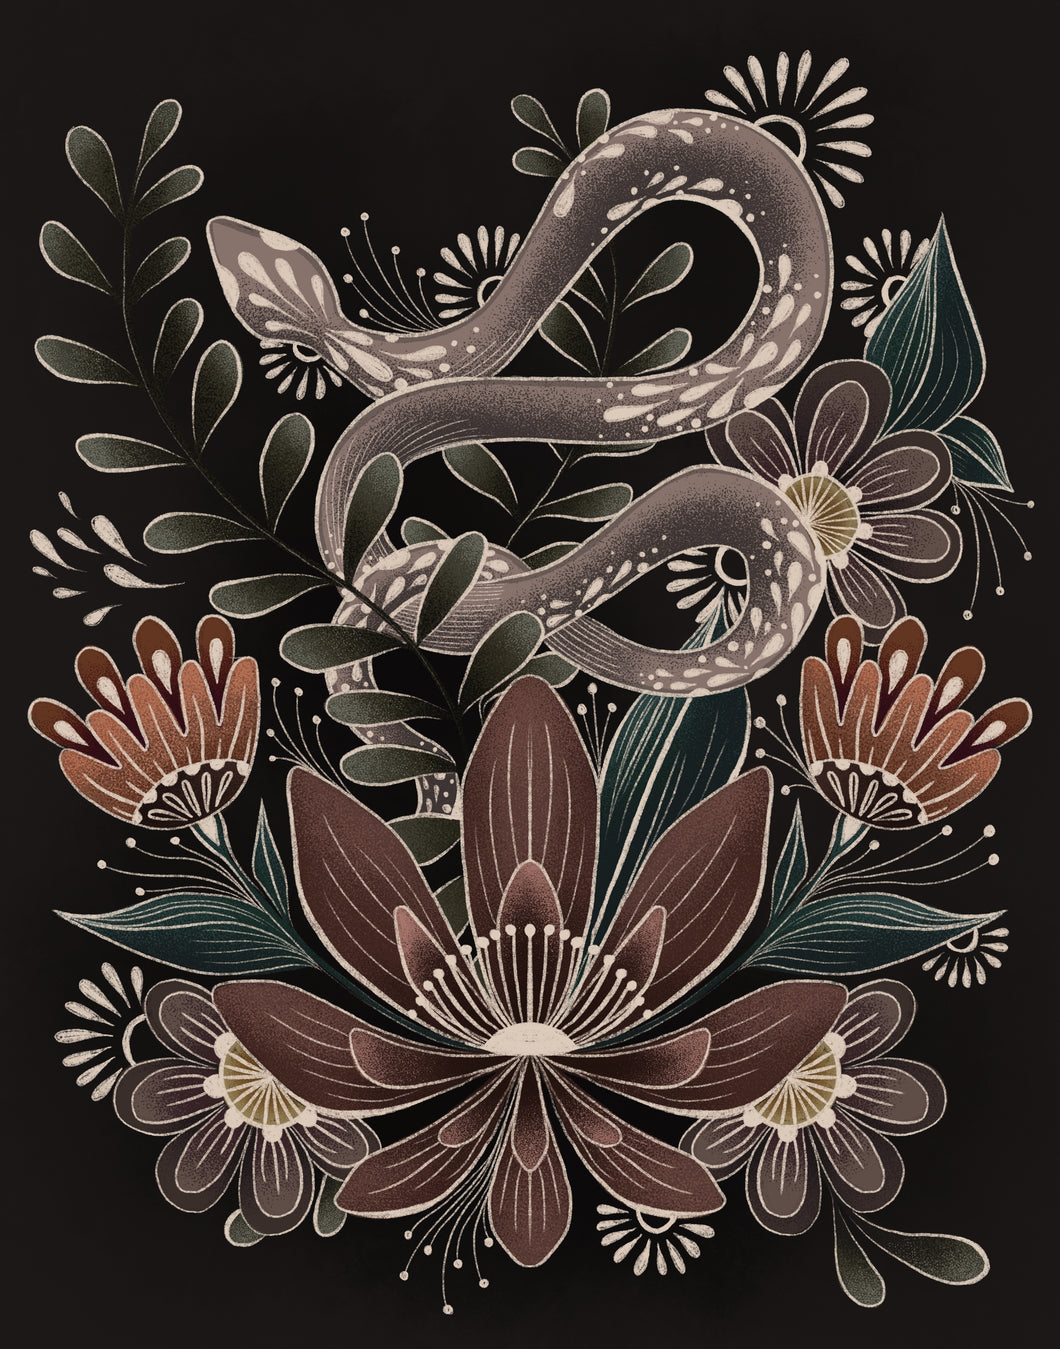 Boho Folk Art Snake Print (5x7